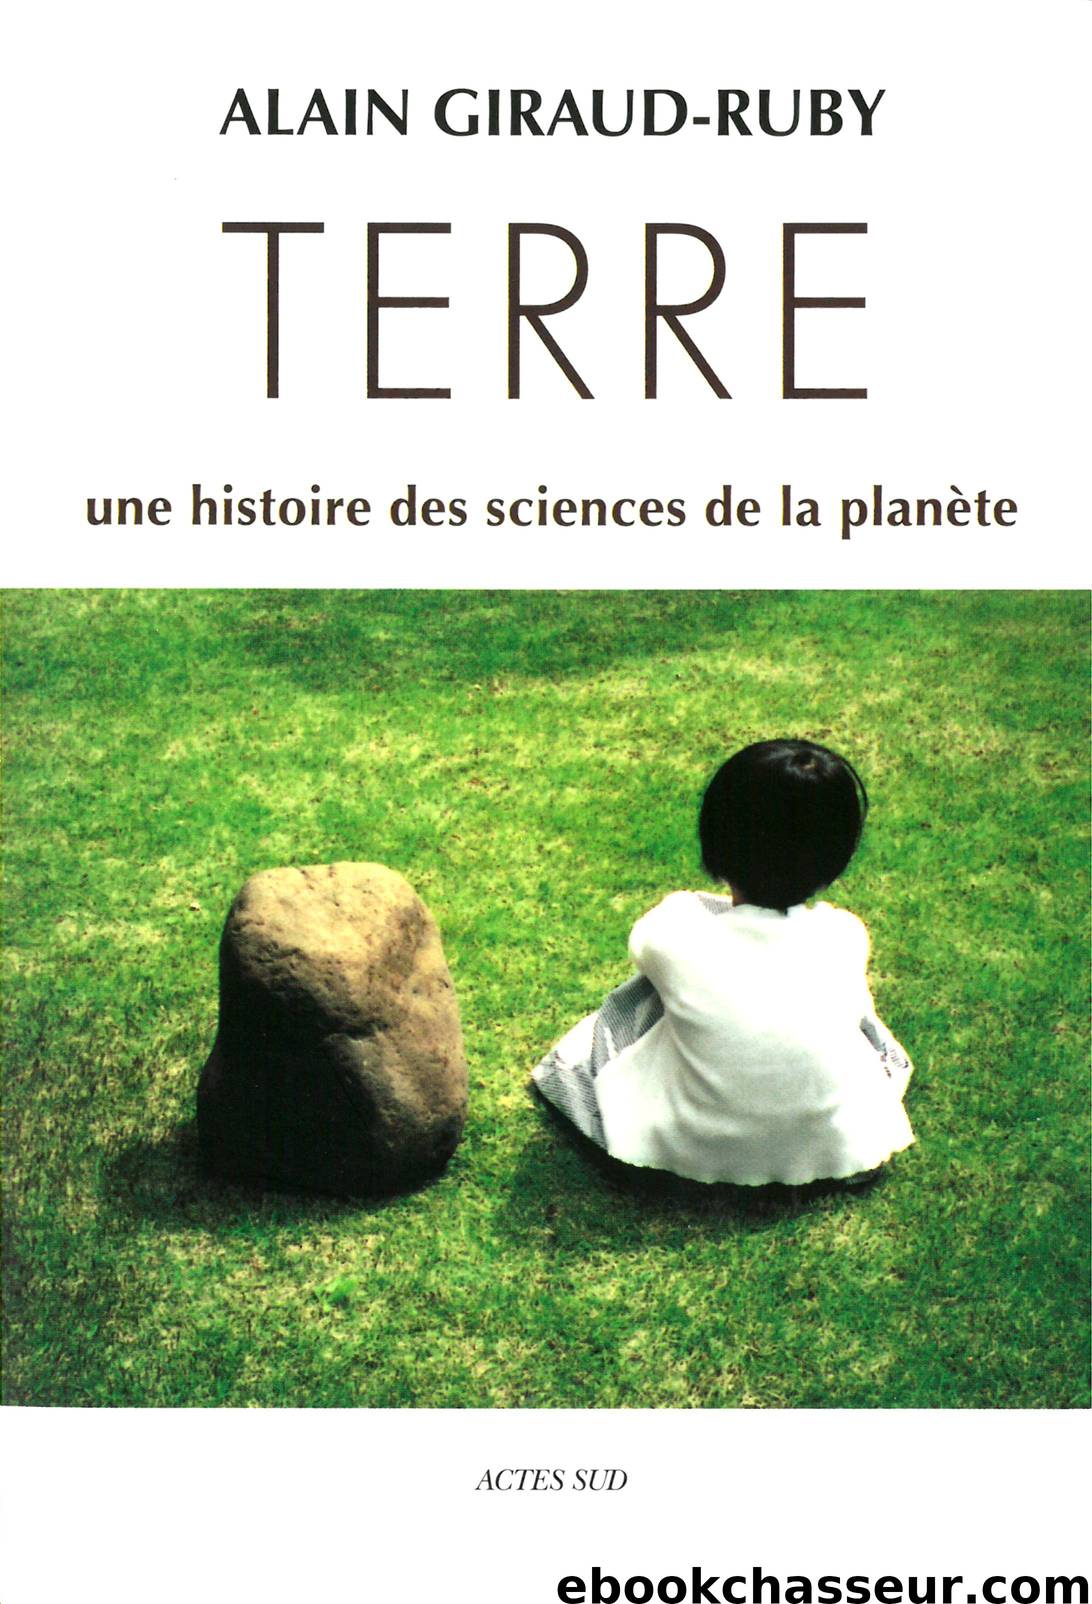 Terre, Une histoire des sciences de la planète by Giraud-Ruby Alain